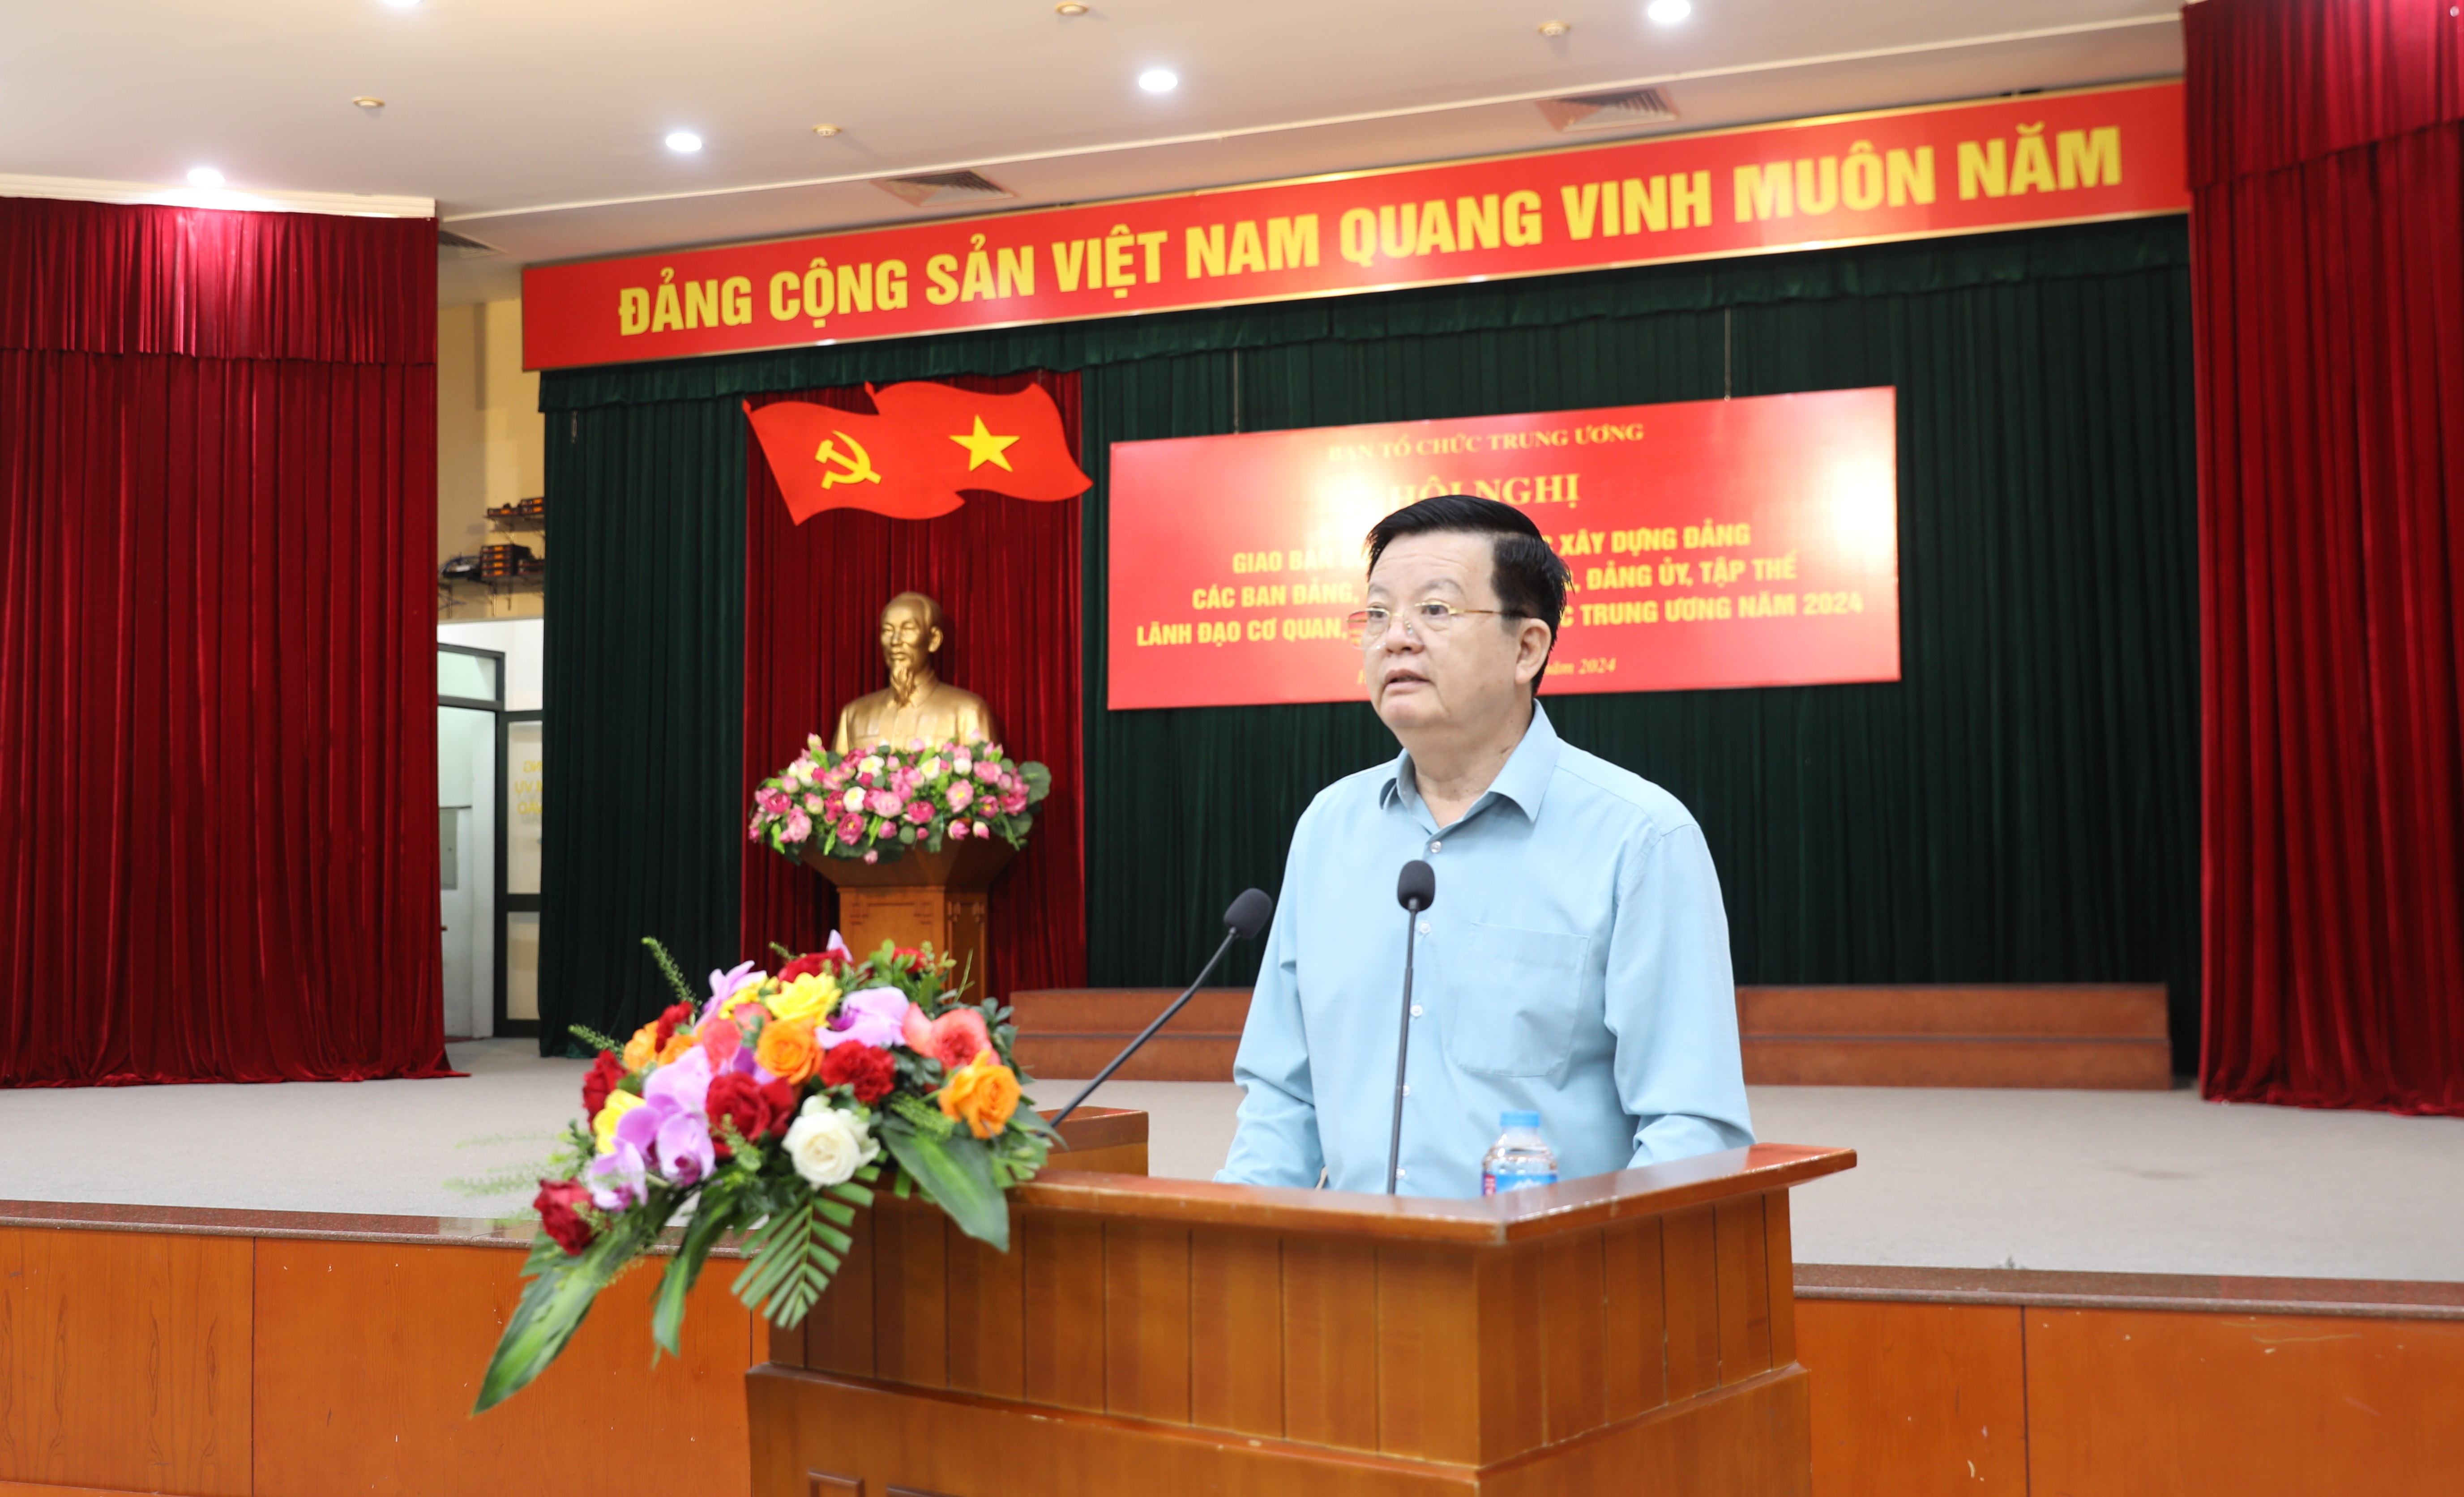 Phó Trưởng ban Thường trực Ban Tổ chức Trung ương Mai Văn Chính phát biểu ý kiến kết luận Hội nghị tại Hội trường A2.